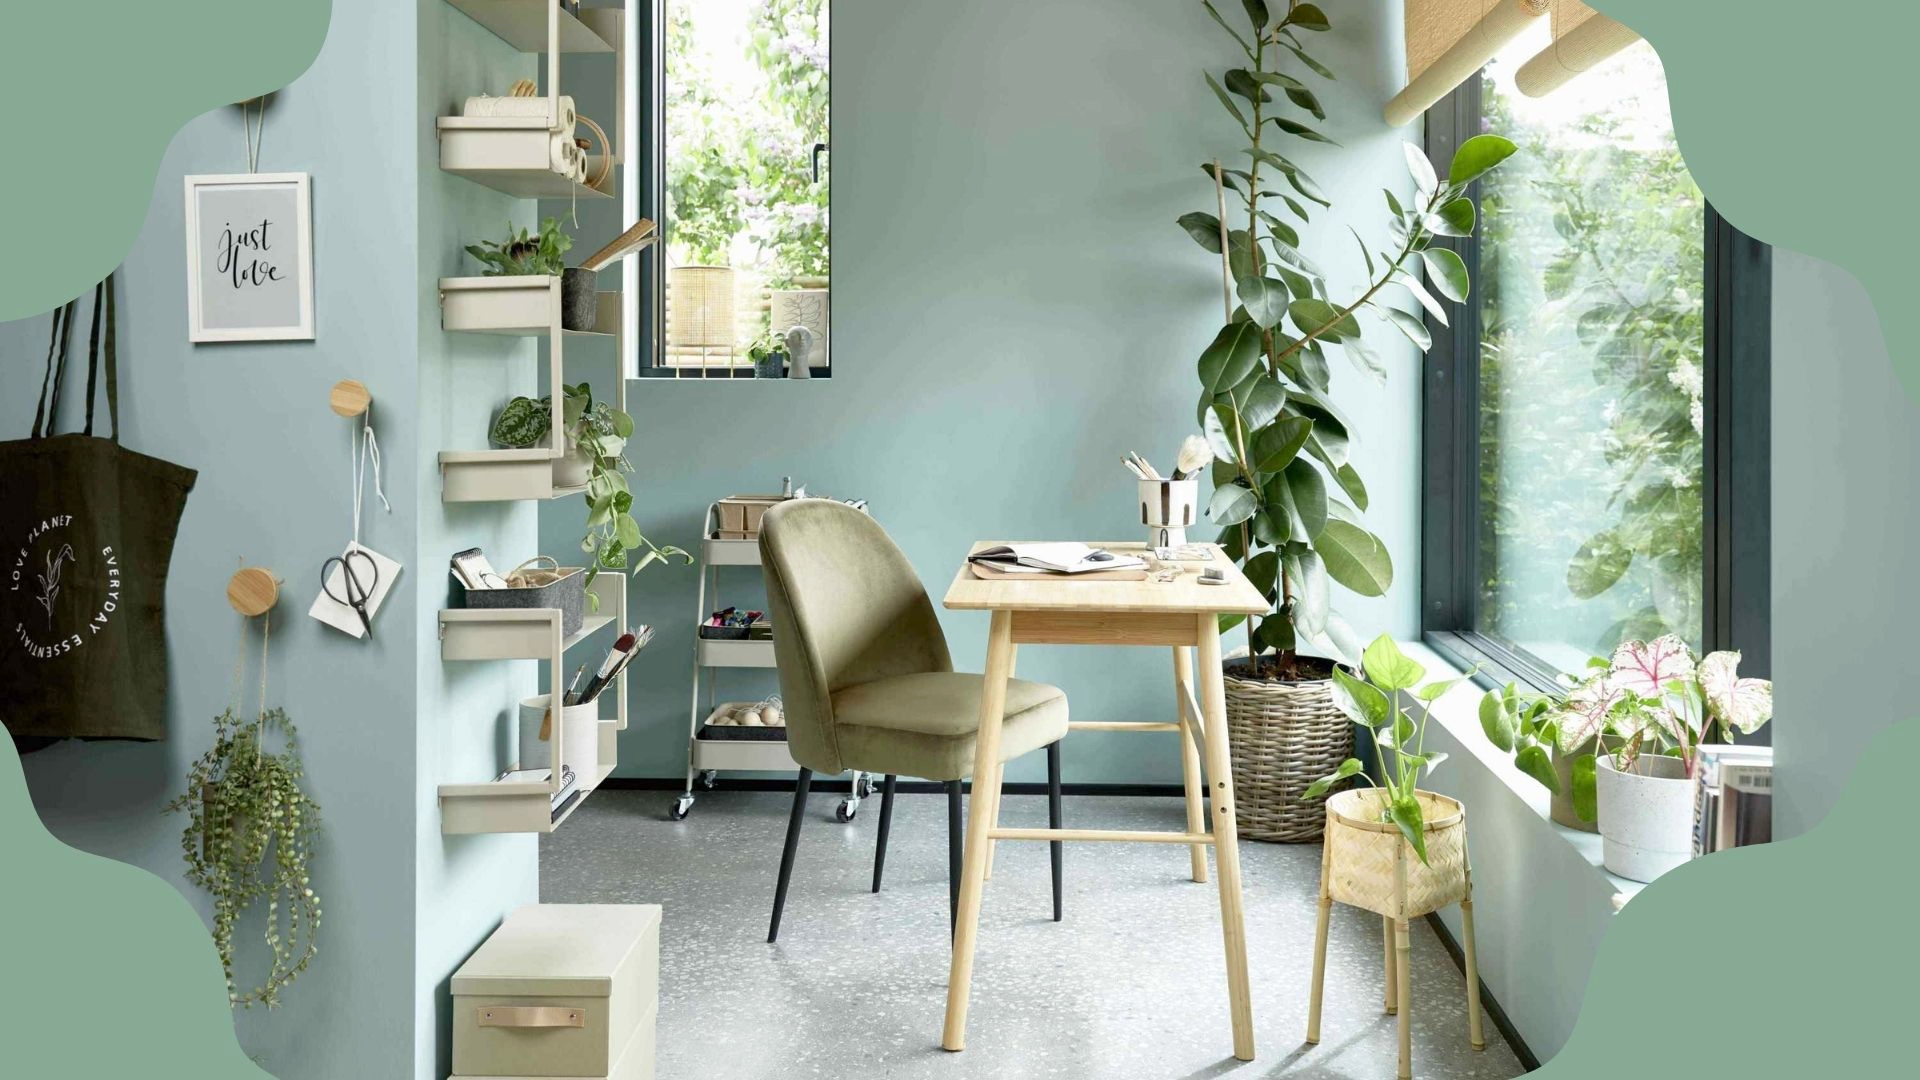 Living Room Design Navy Blue Or Sage Green